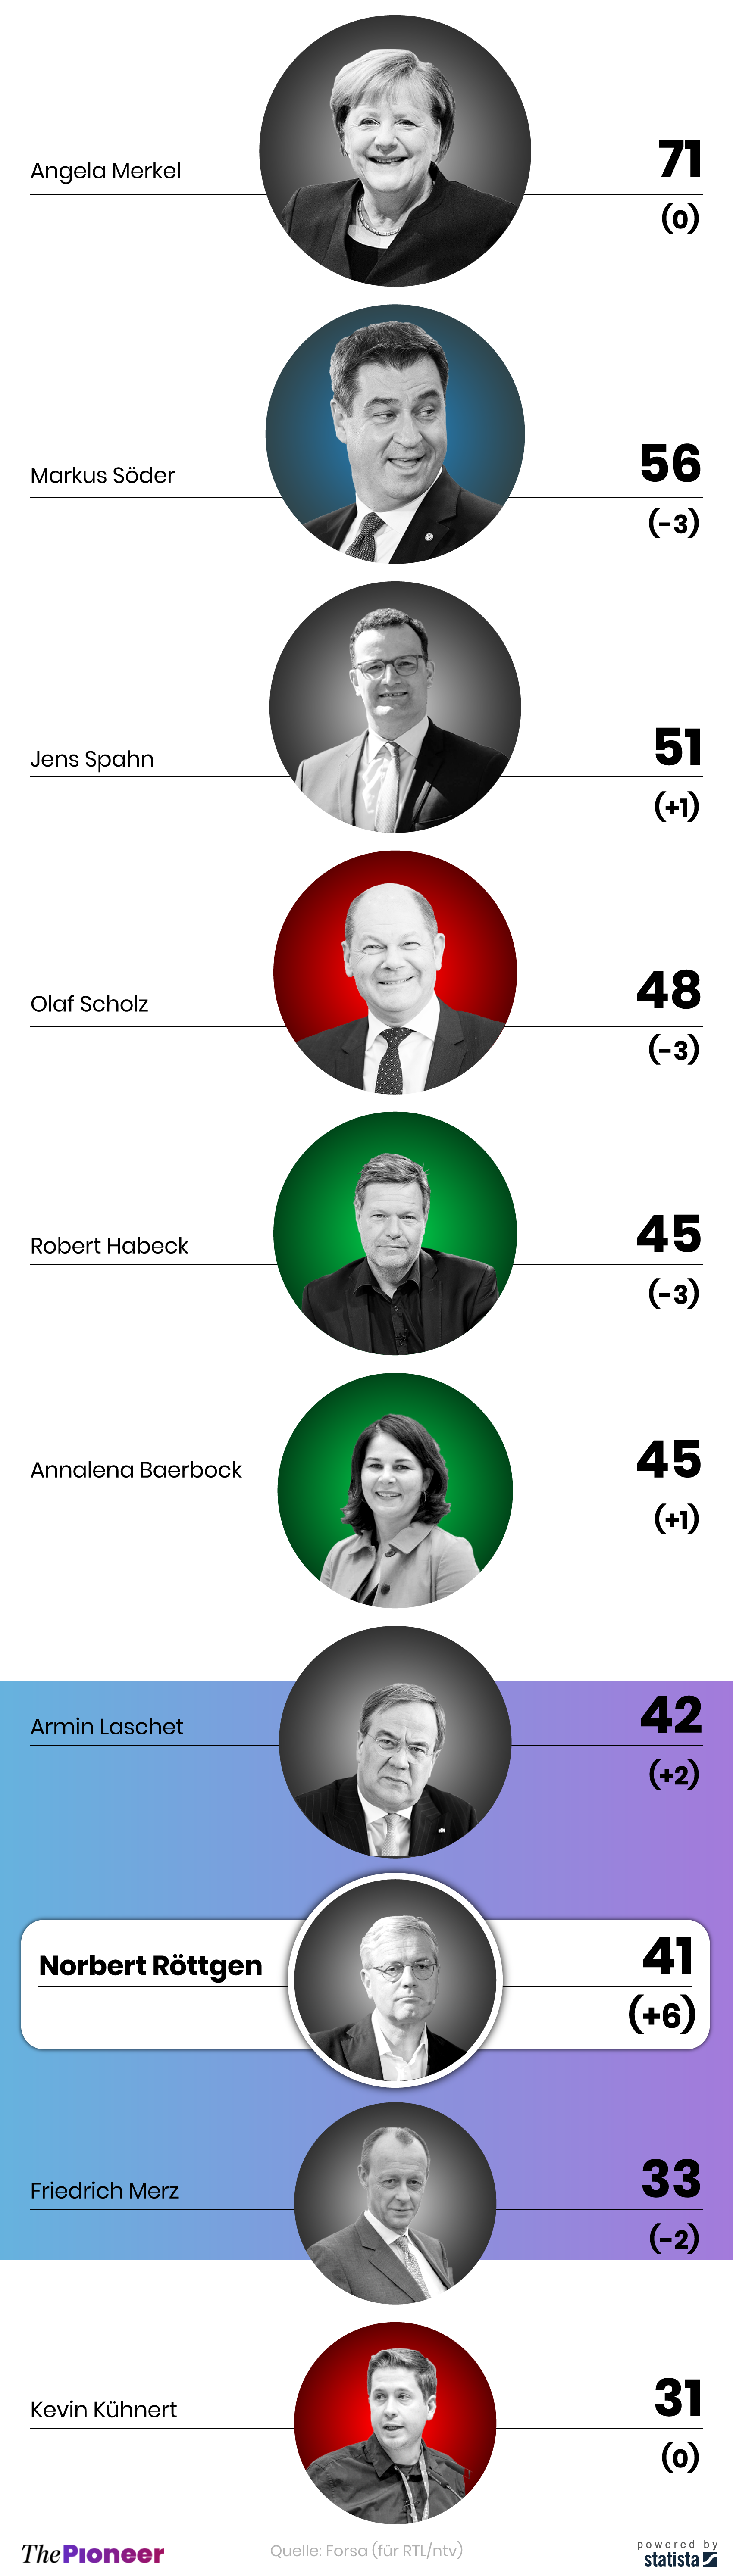 Politiker-Ranking im Dezember 2020, Platz 1 bis 10